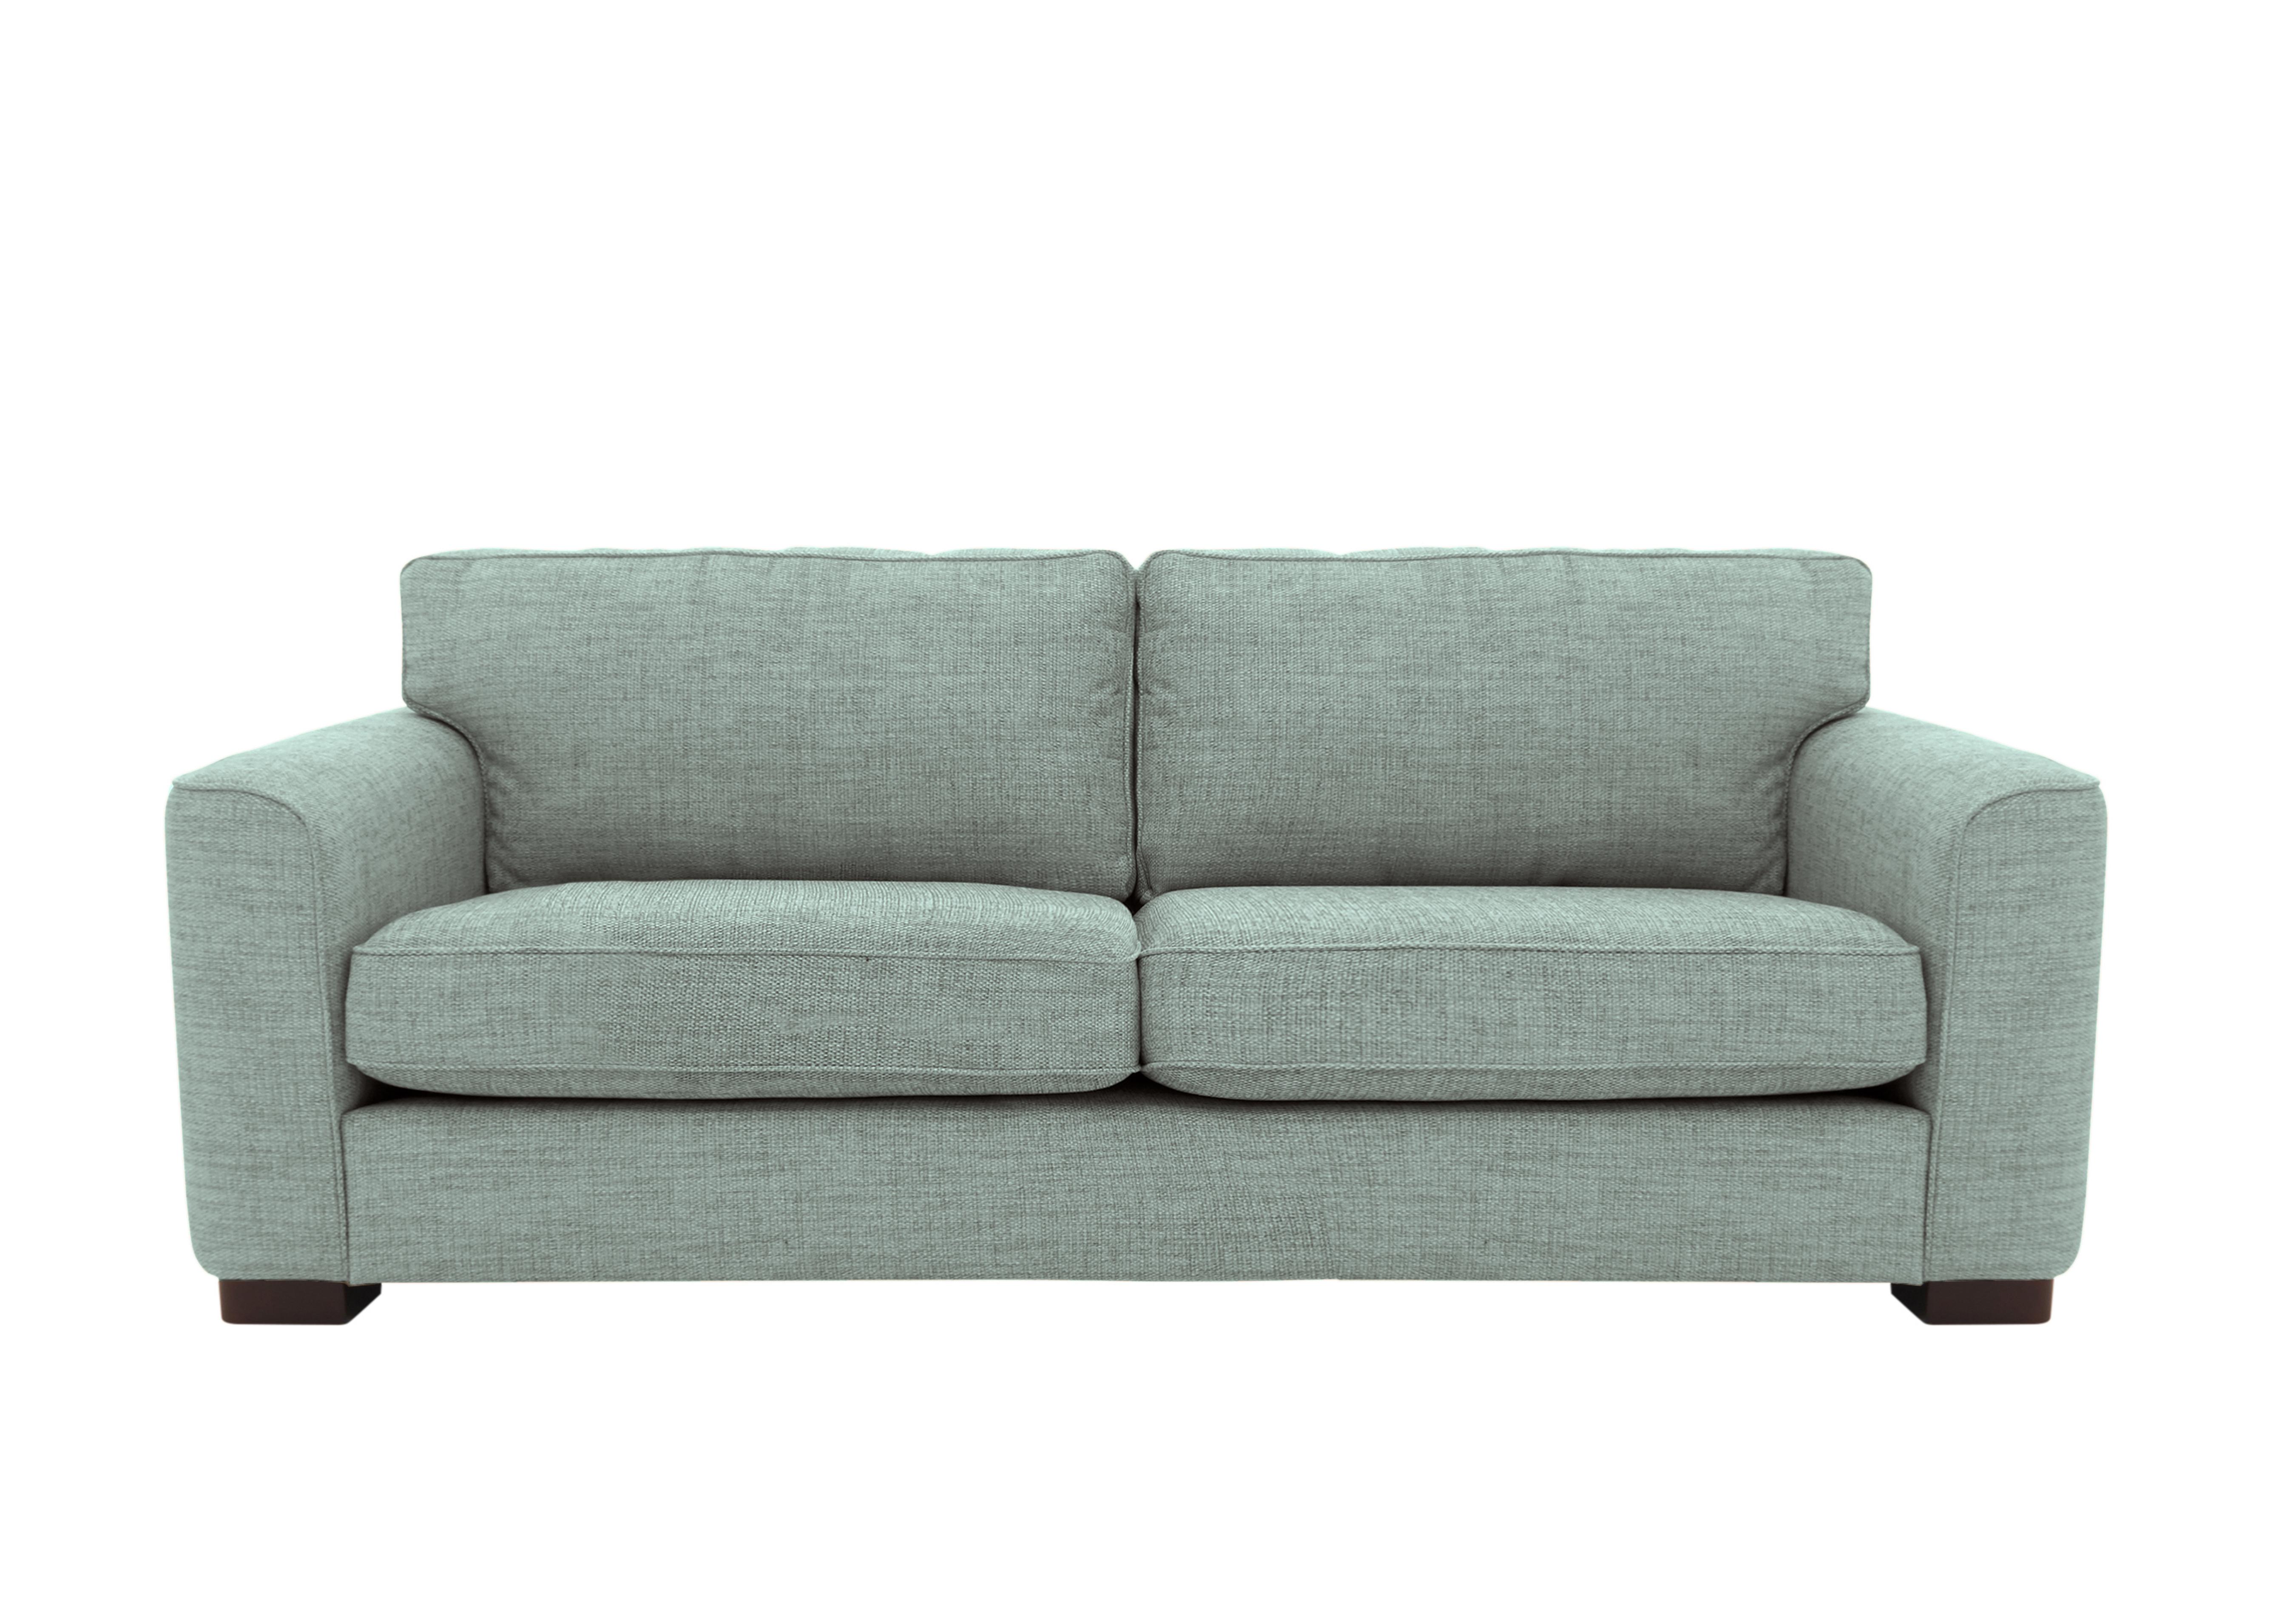 Elora 4 Seater Fabric Sofa in Kento 509 Aqua Dbf on Furniture Village